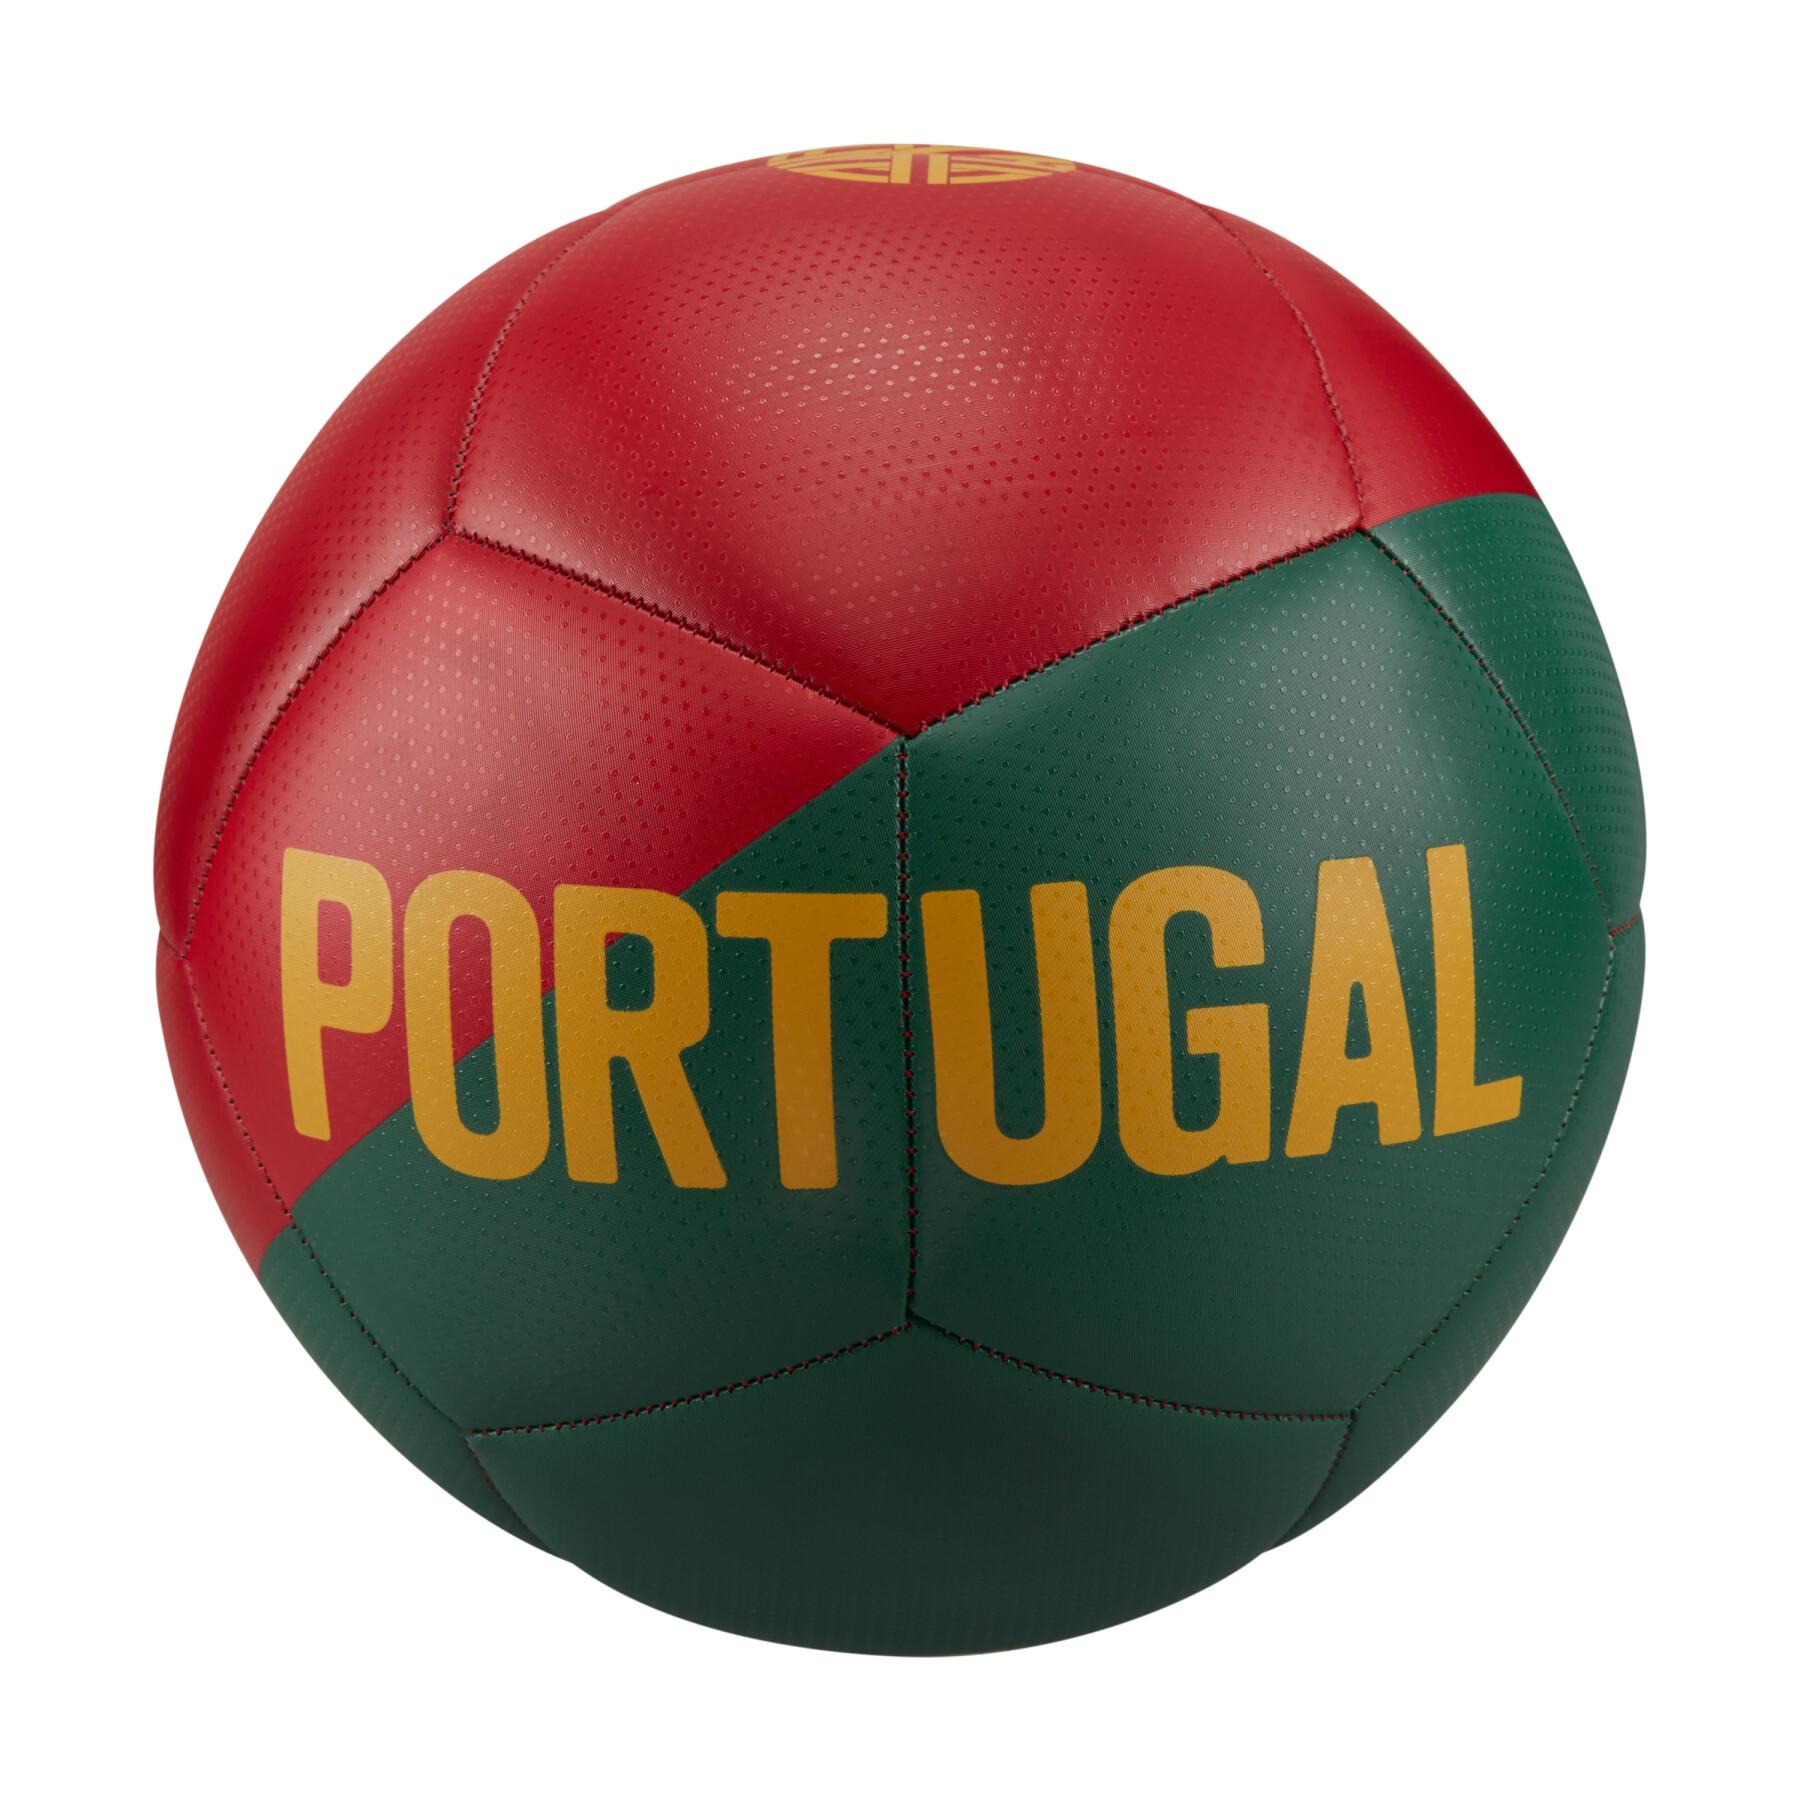 Wereldbekerbal 2022 Portugal